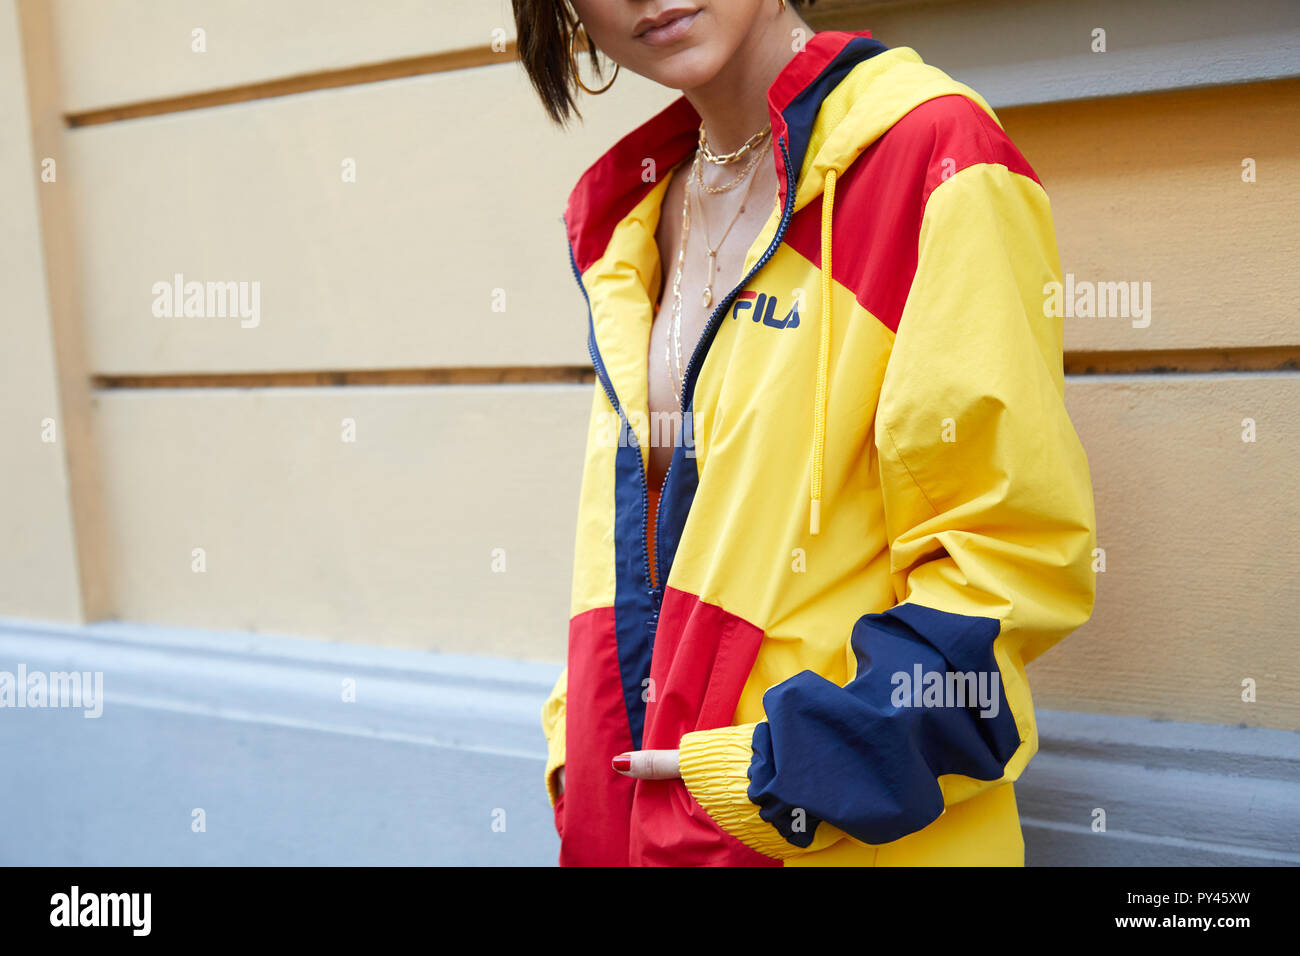 Ernest Shackleton Puntualidad Funcionar Milán, Italia - 23 de septiembre de 2018: Una mujer con el color amarillo,  rojo y azul chaqueta de fila en fila antes de Fashion show, la Semana de la  moda de